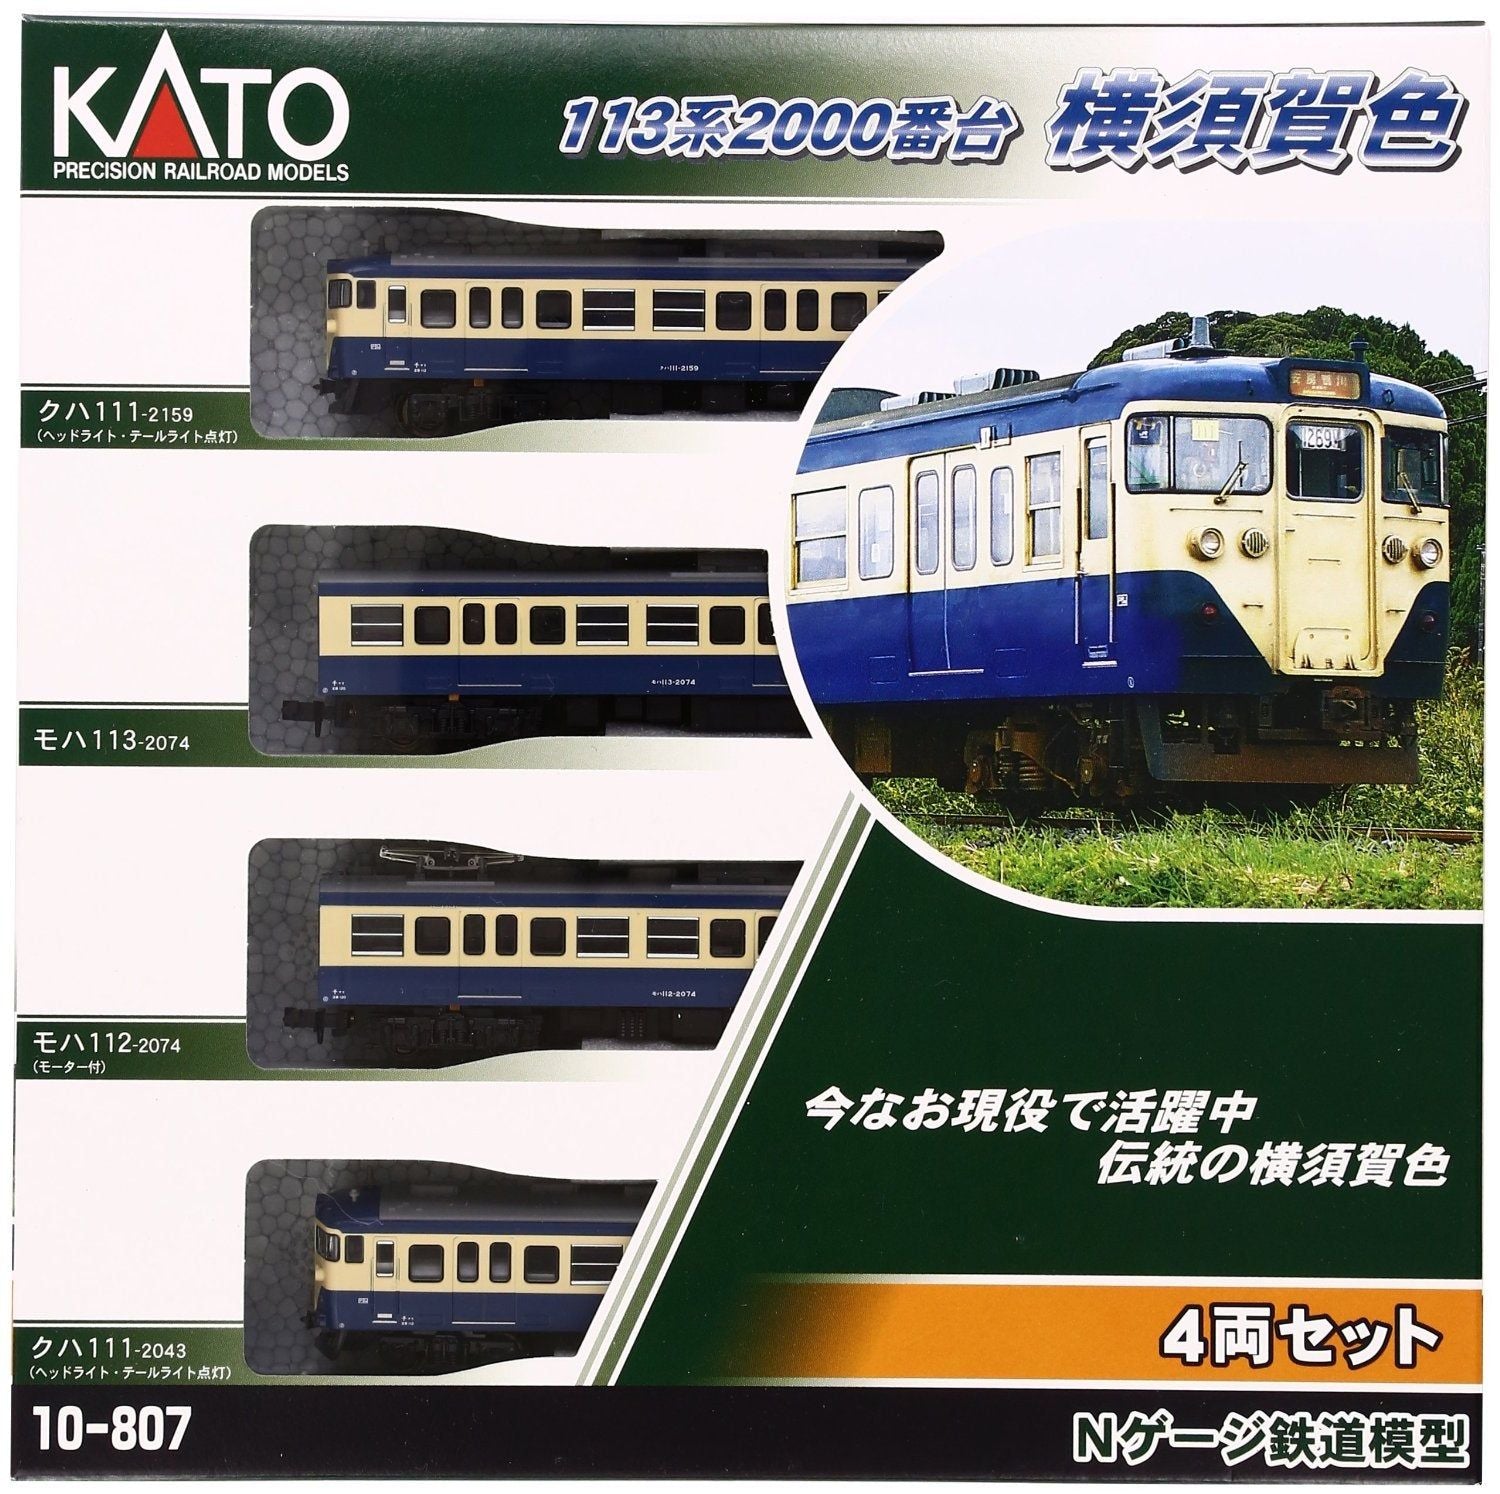 KATO 10-807 Series 113-2000 Yokosuka Color 4-Car Set - BanzaiHobby